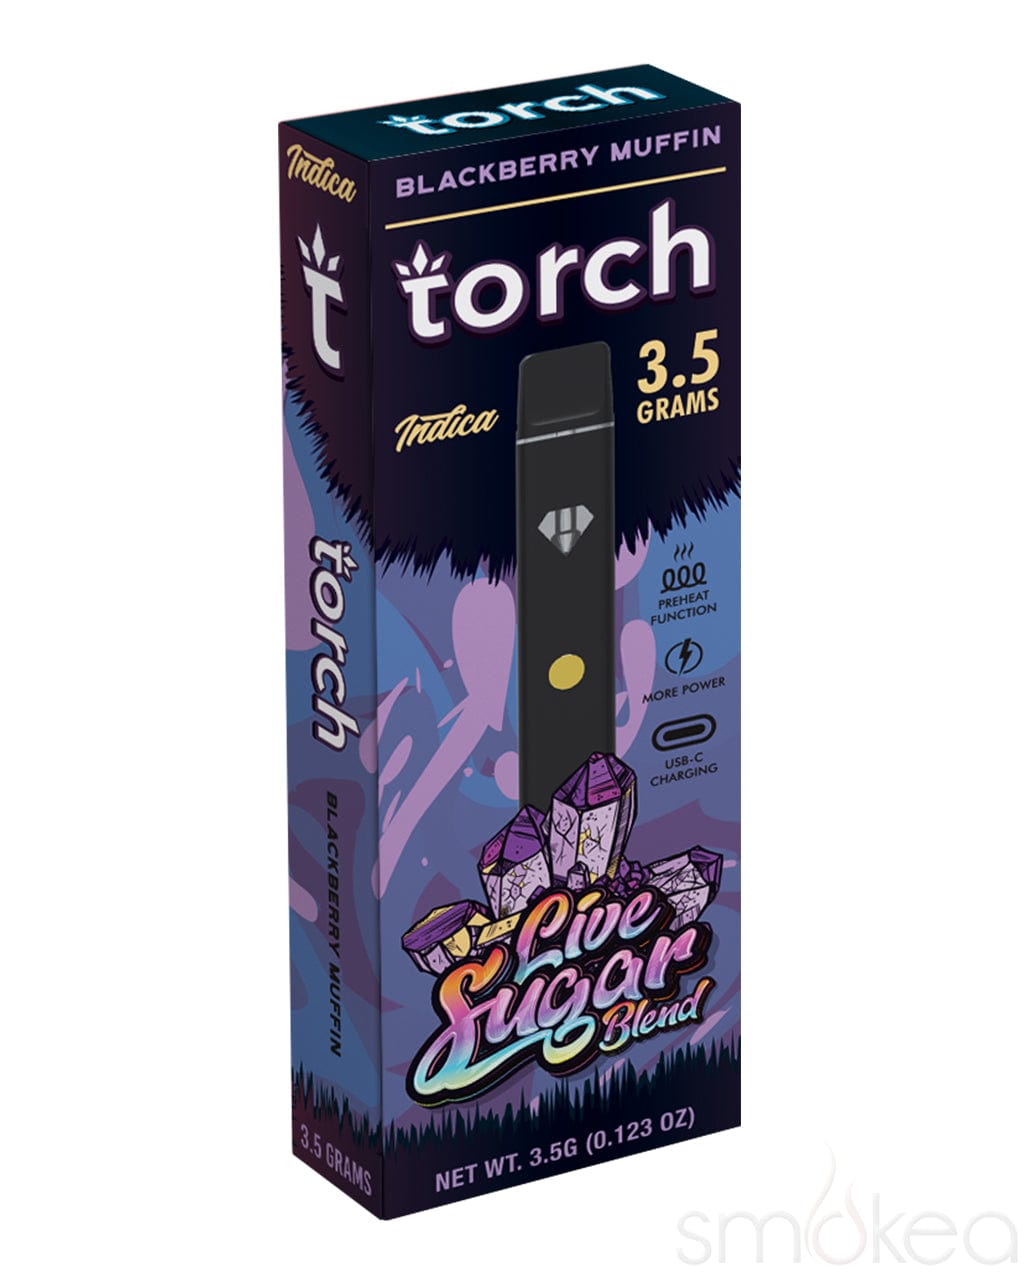 Torch 3.5g Live Sugar Blend Vape - Blackberry Muffin